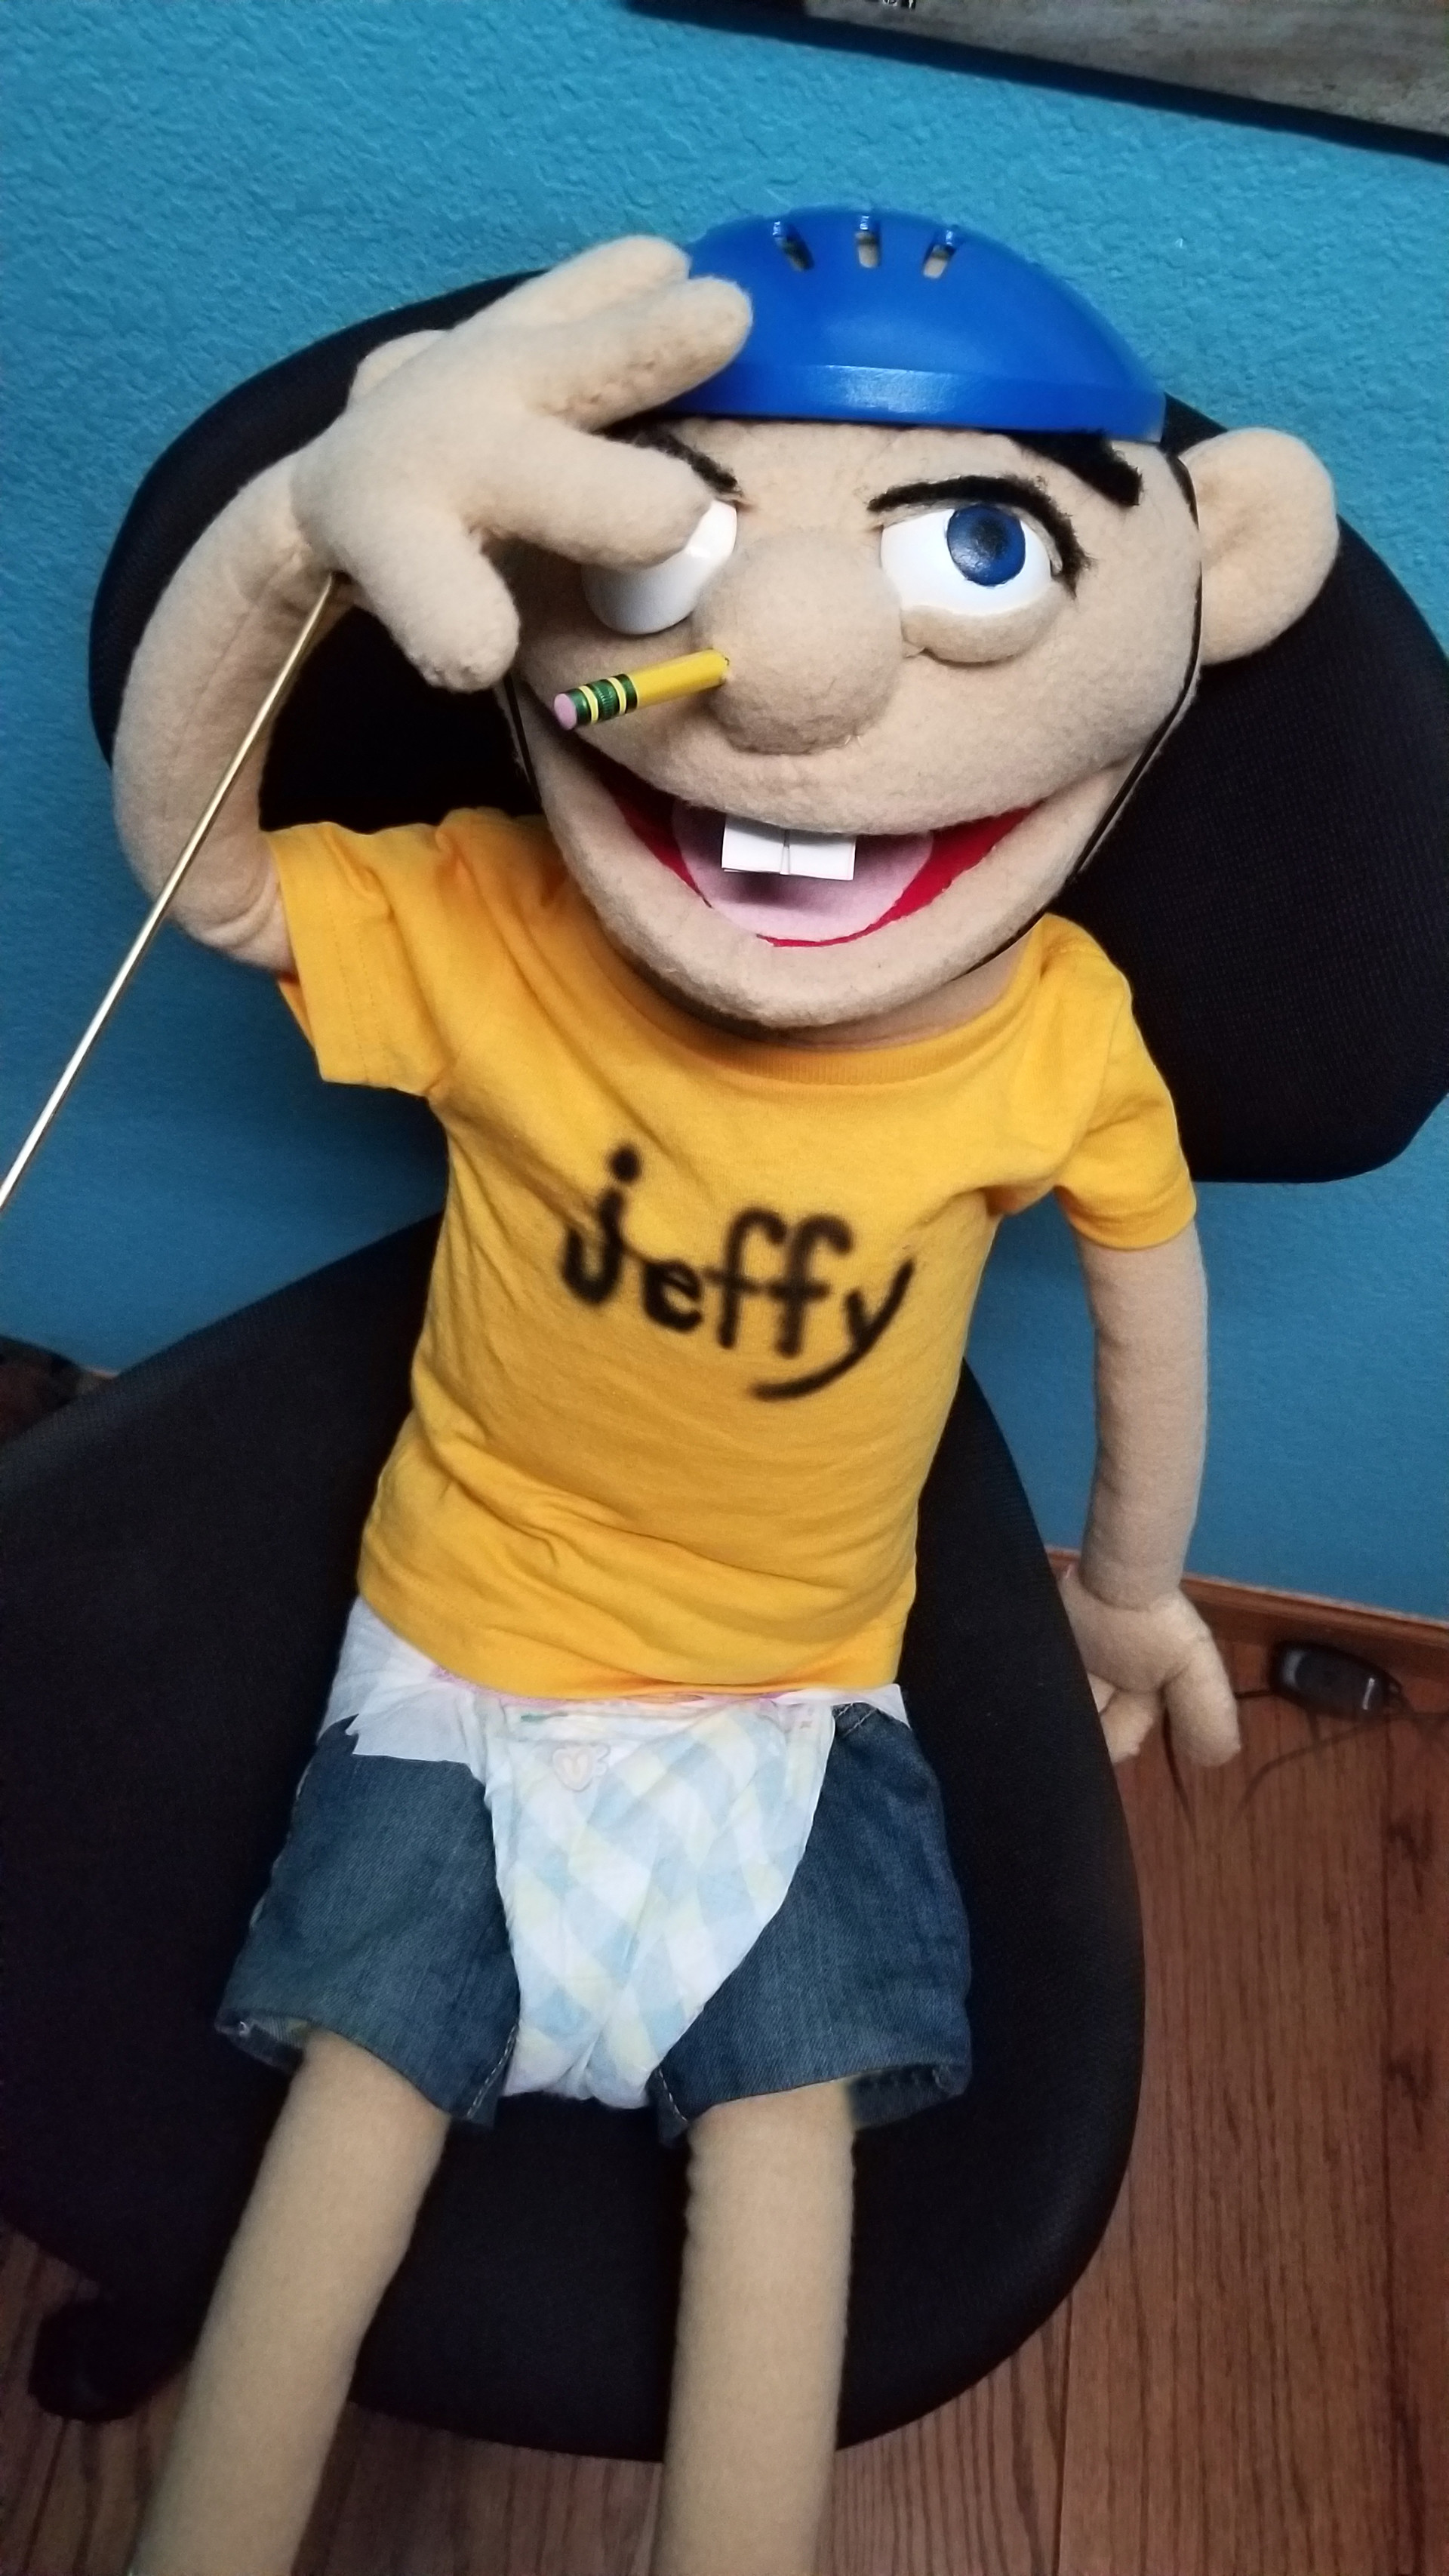 jeffy doll cheap